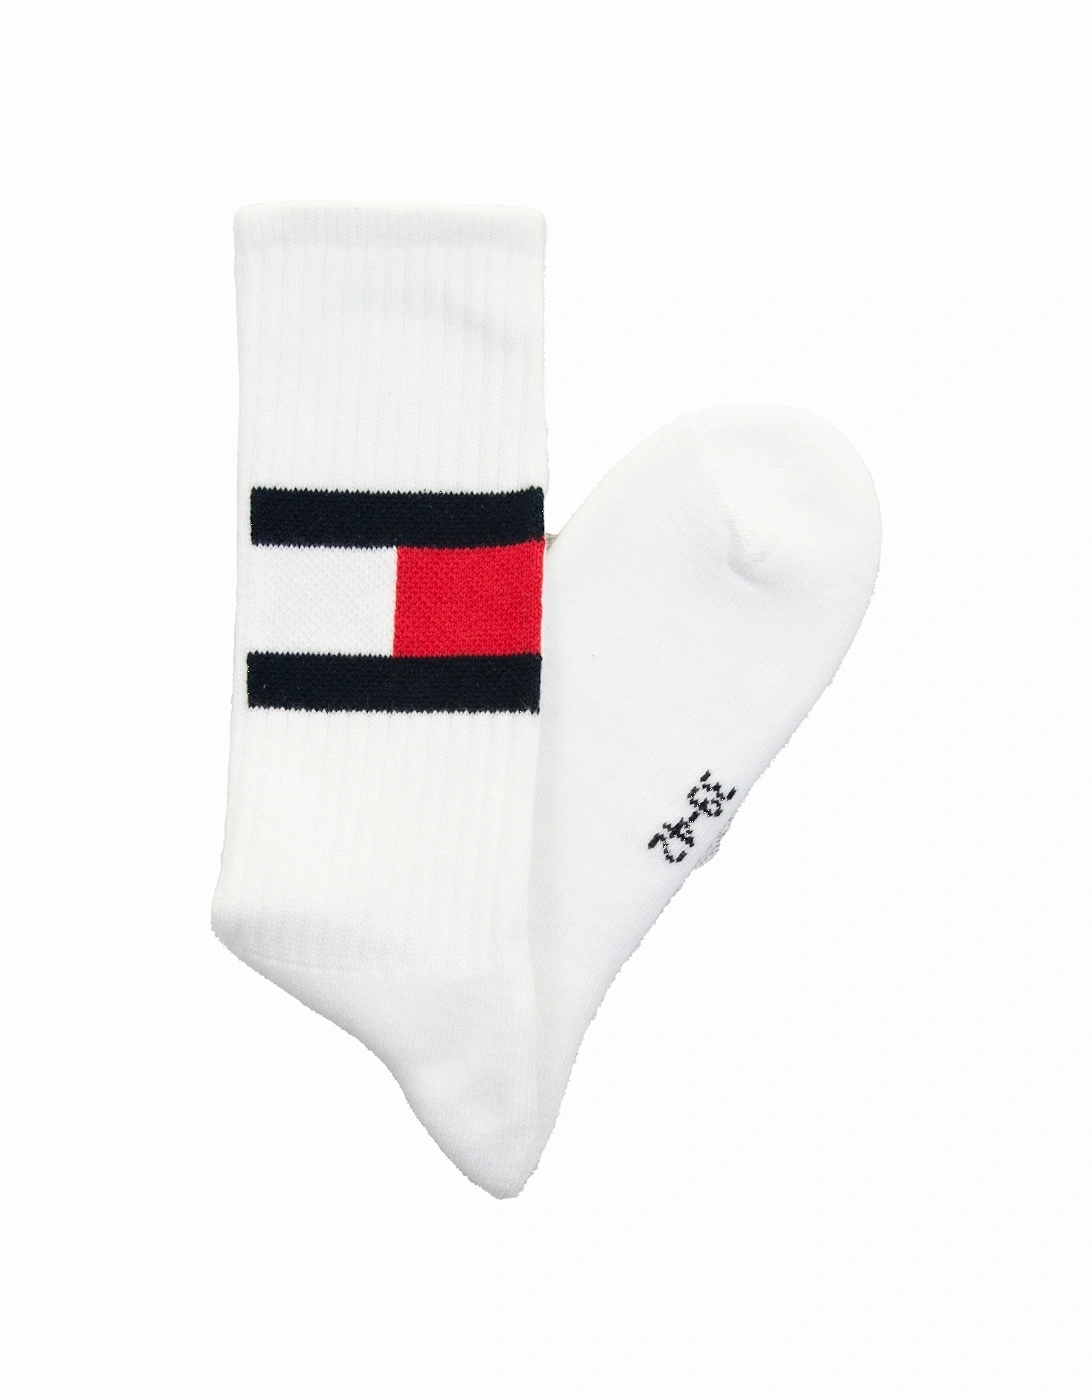 Mens Flag Socks (White), 3 of 2